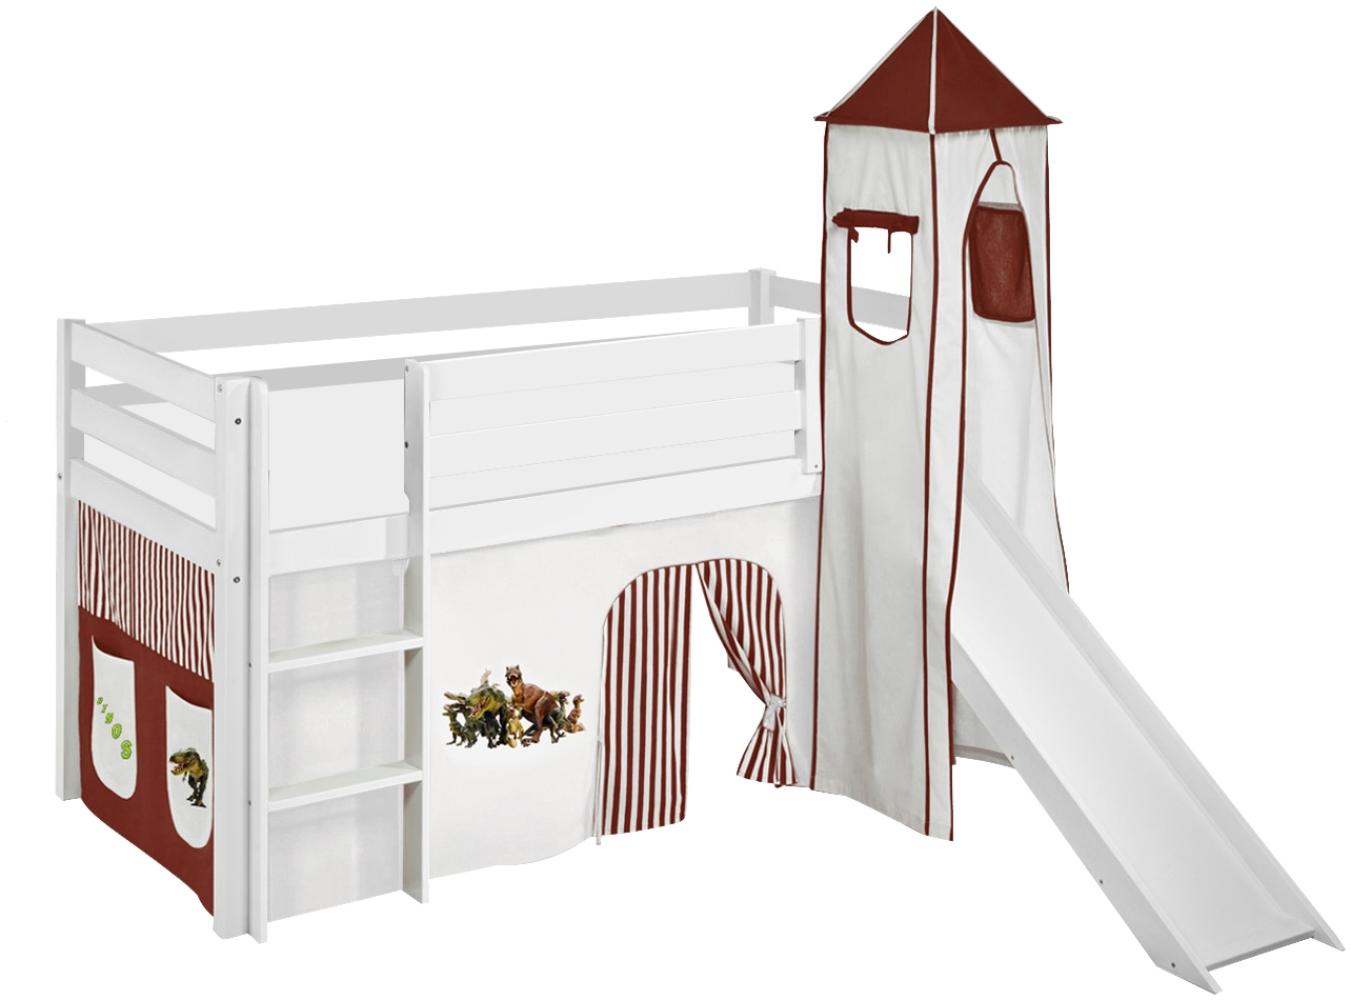 Lilokids 'Jelle' Spielbett 90 x 190 cm, Dinos Braun Beige, Kiefer massiv, mit Turm, Rutsche und Vorhang Bild 1